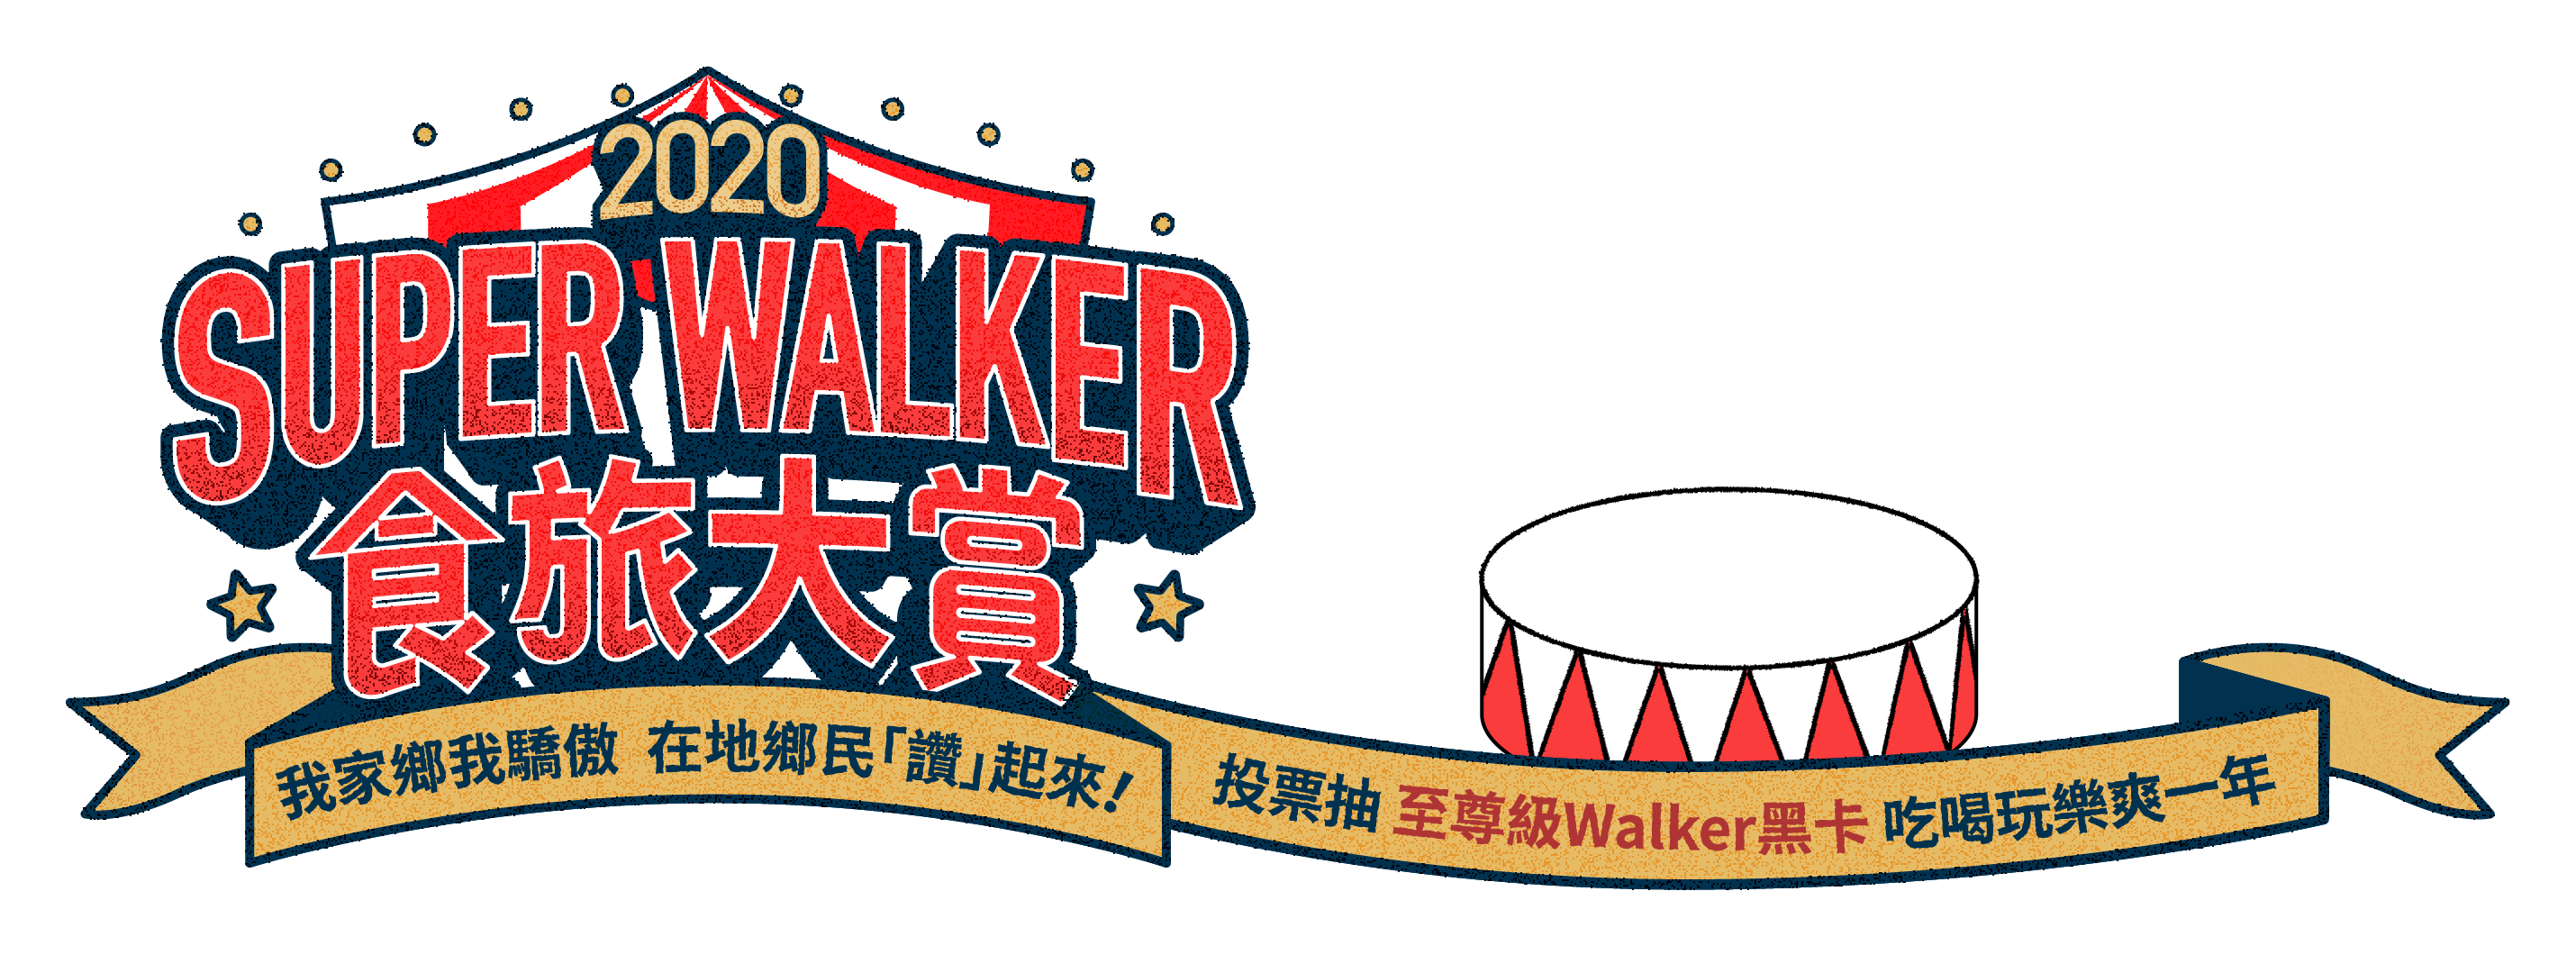 Super Walker 食旅大賞